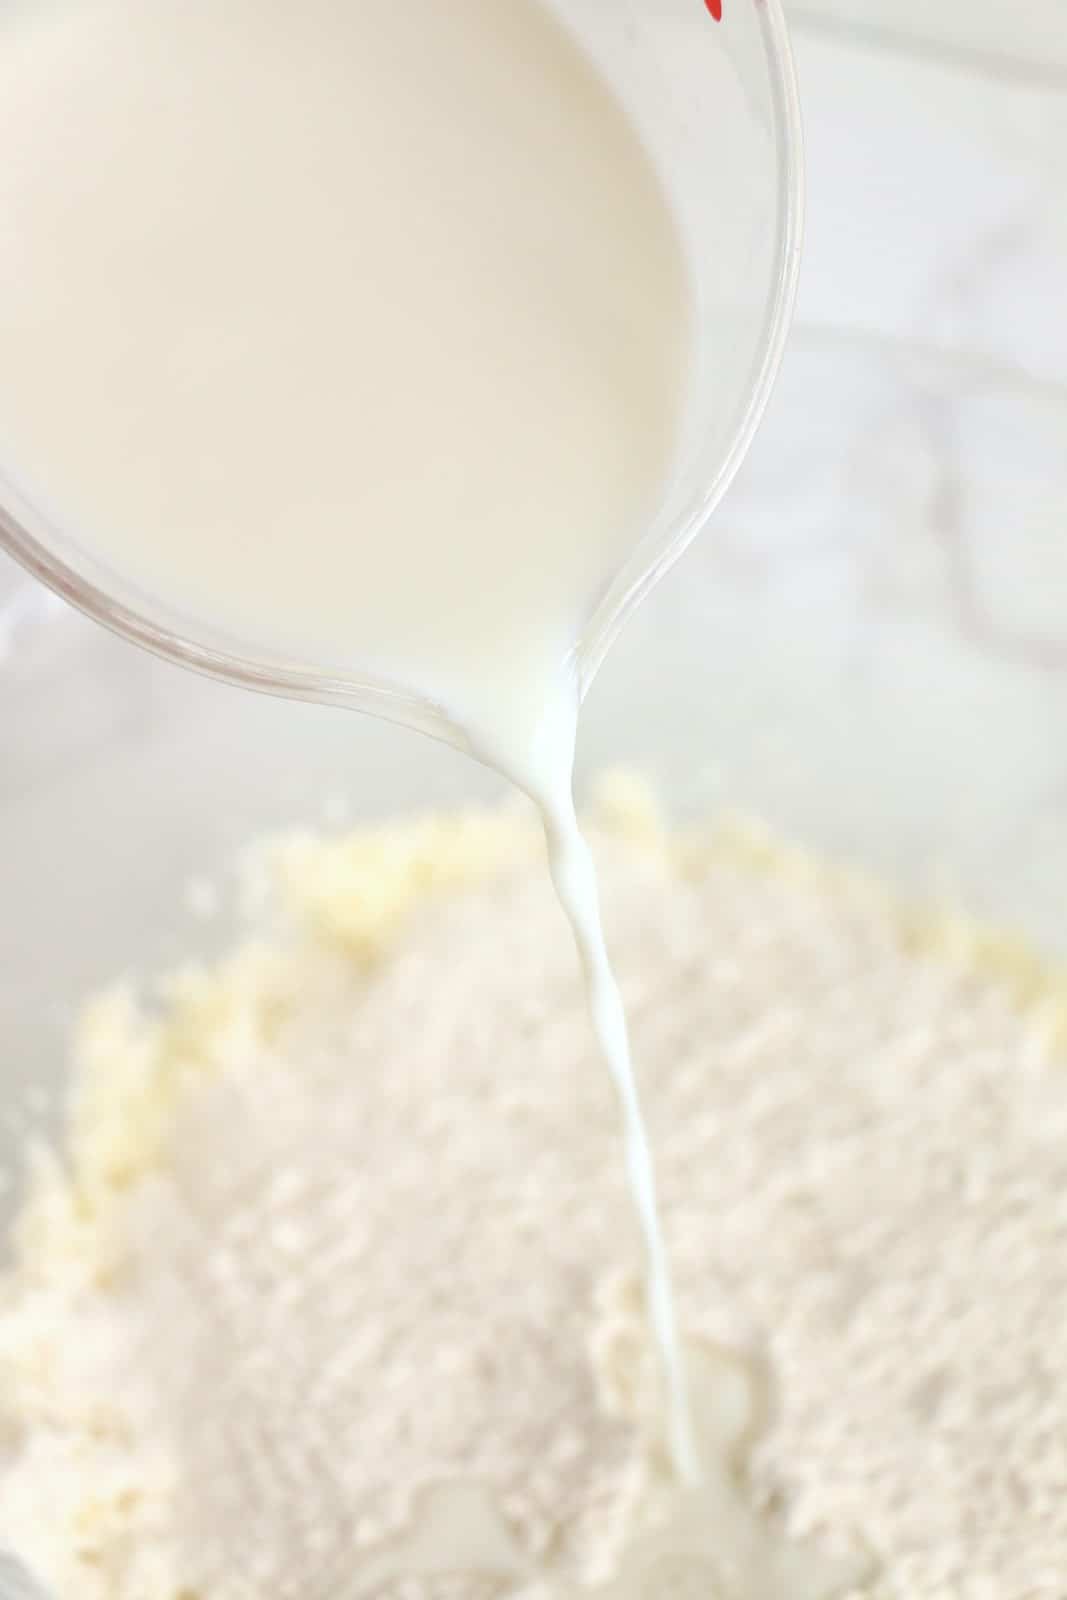 La farina e il latte vengono alternati nella miscela di pastella nella ciotola.